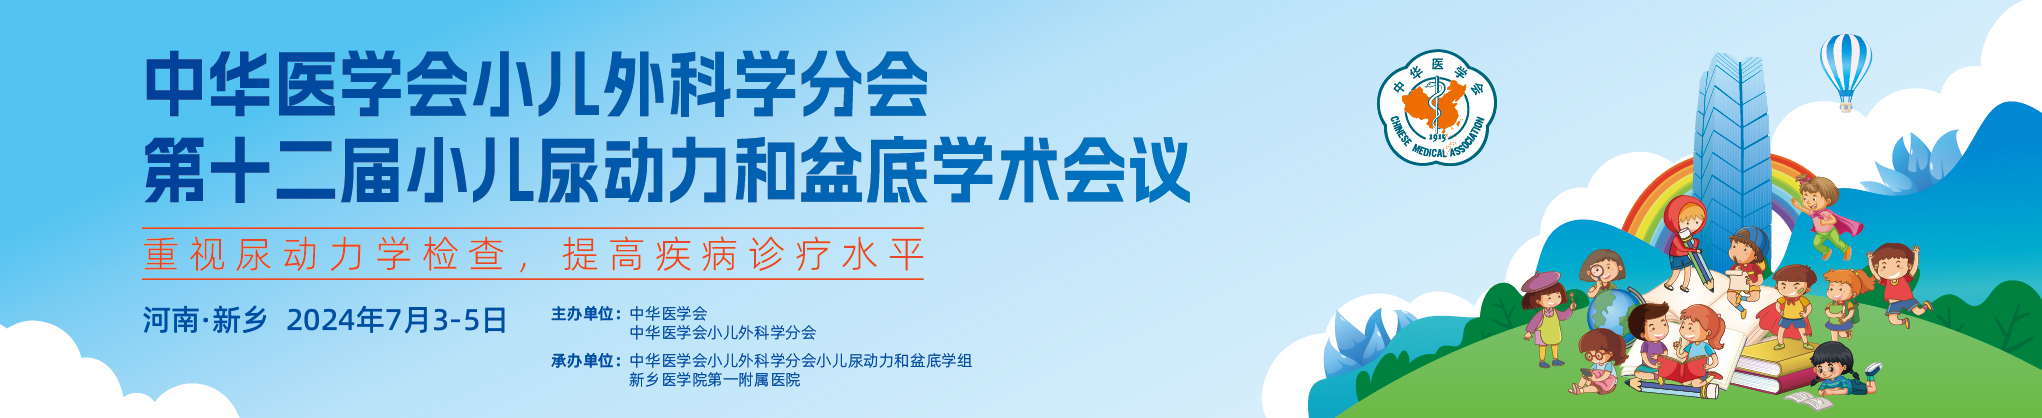 中华医学会小儿外科学分会第十二届小儿尿动力和盆底学术会议